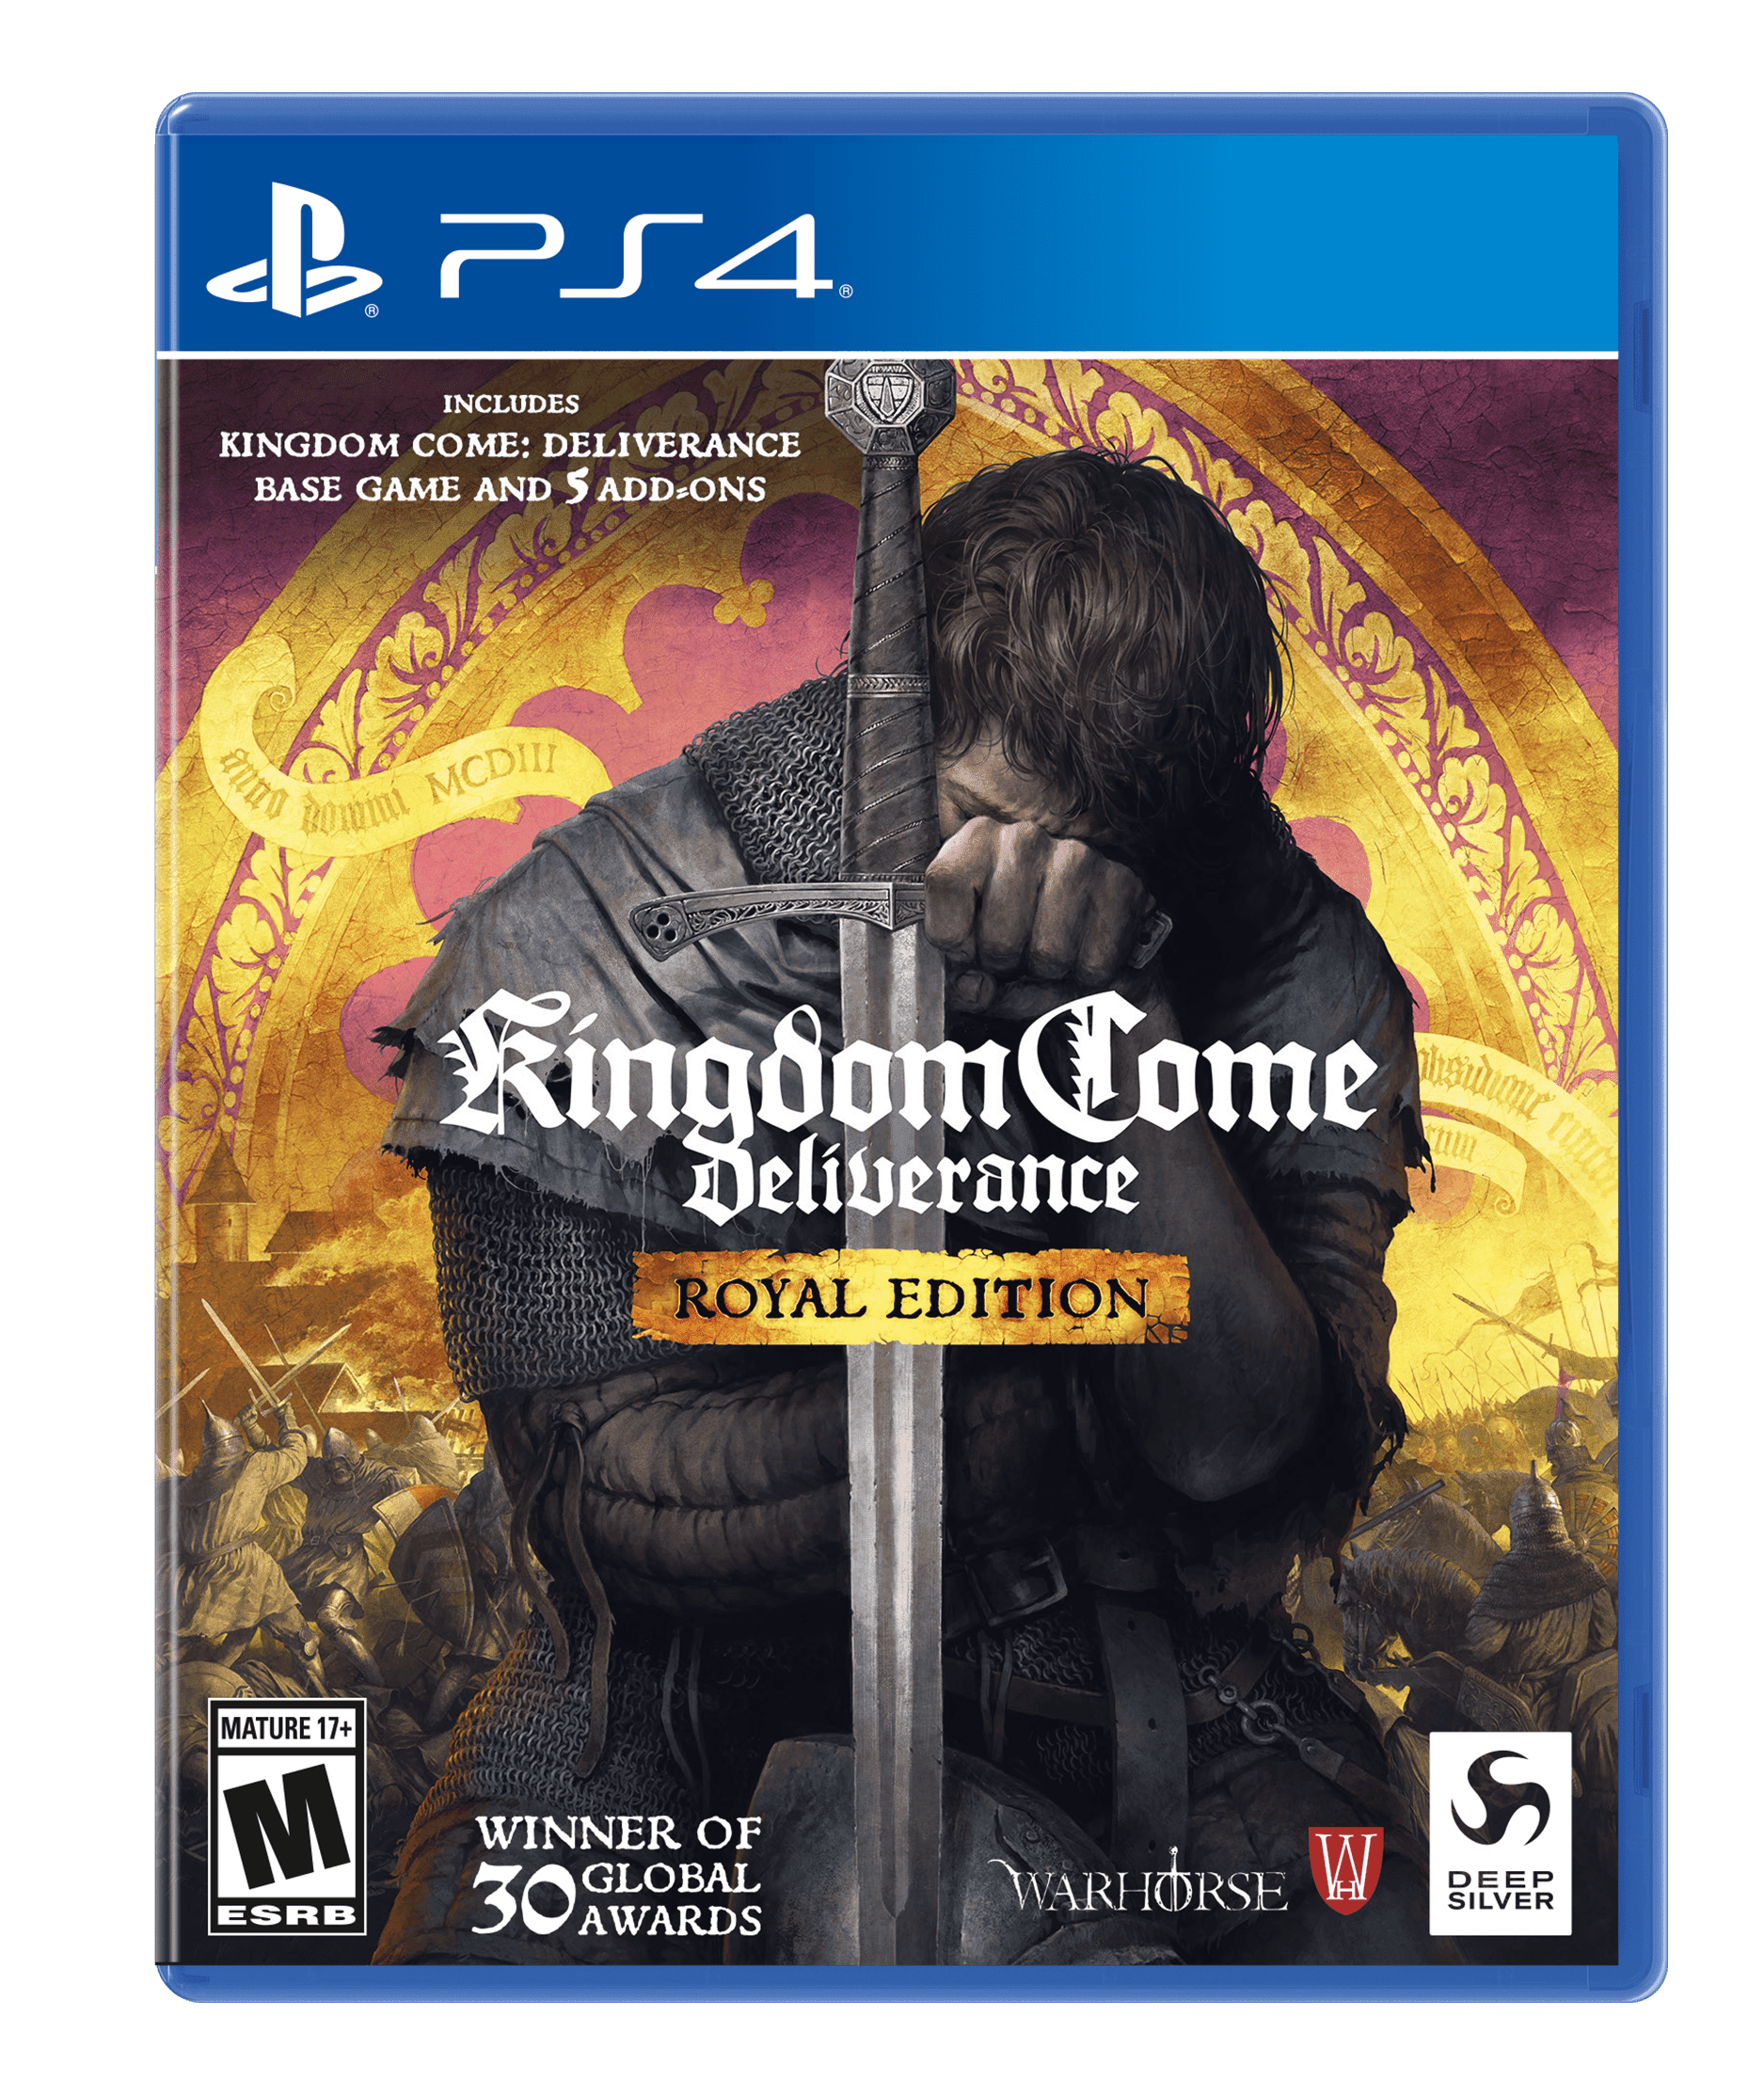 Kingdom Come Deliverance: Royal Edition, Deep Silver, PlayStation 4, 816819016152 Walmart.com